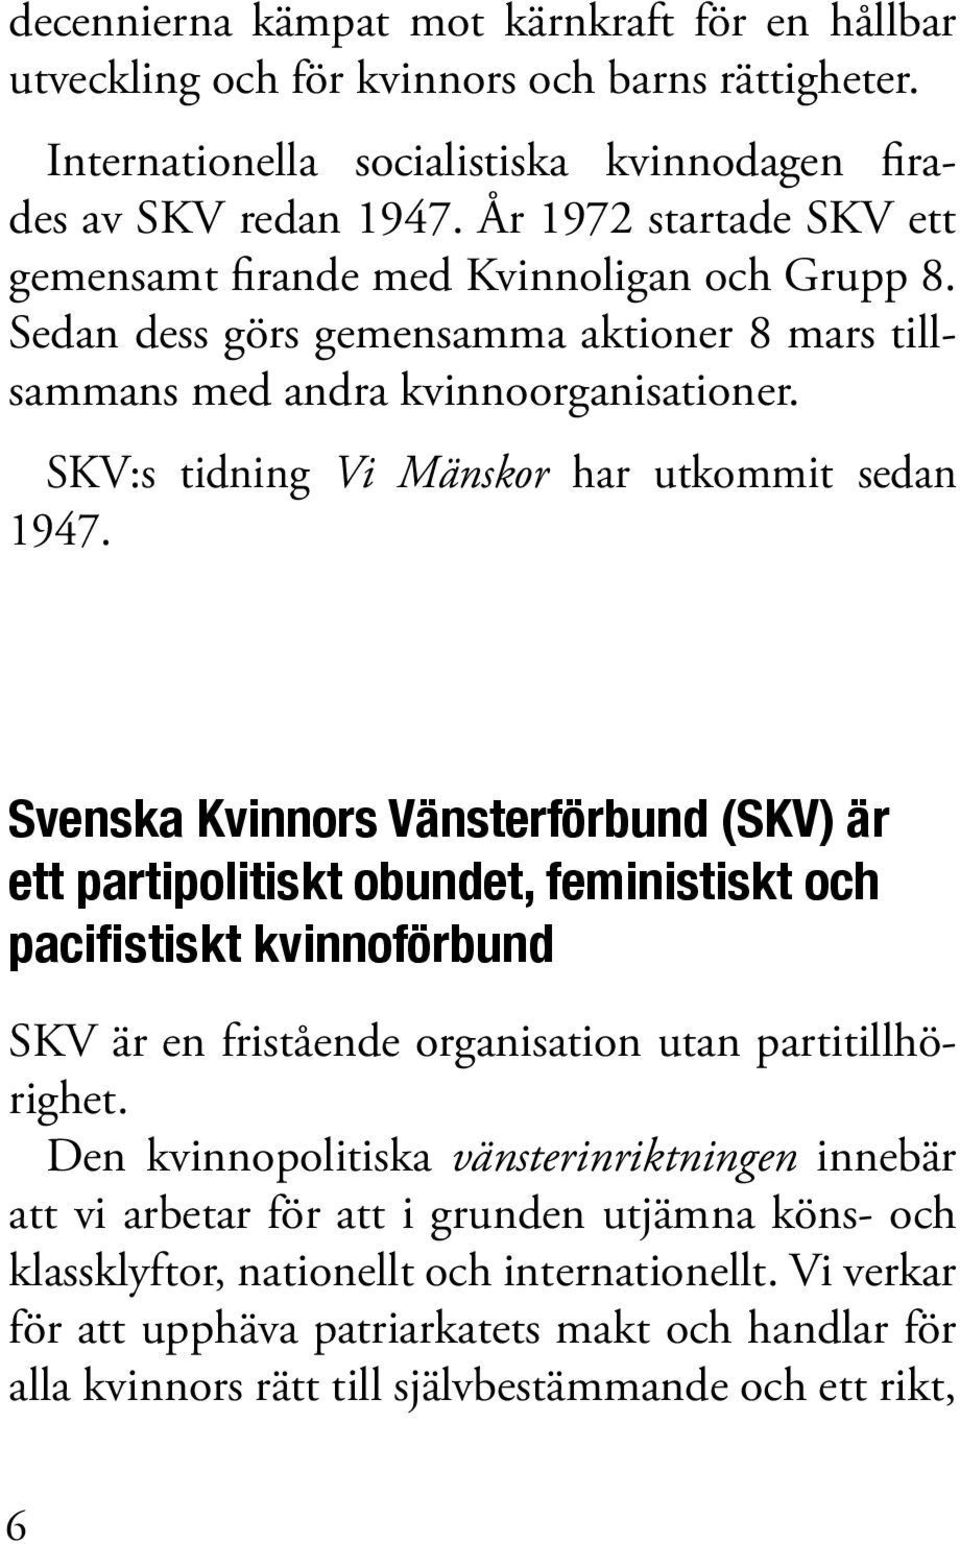 SKV:s tidning Vi Mänskor har utkommit sedan 1947.